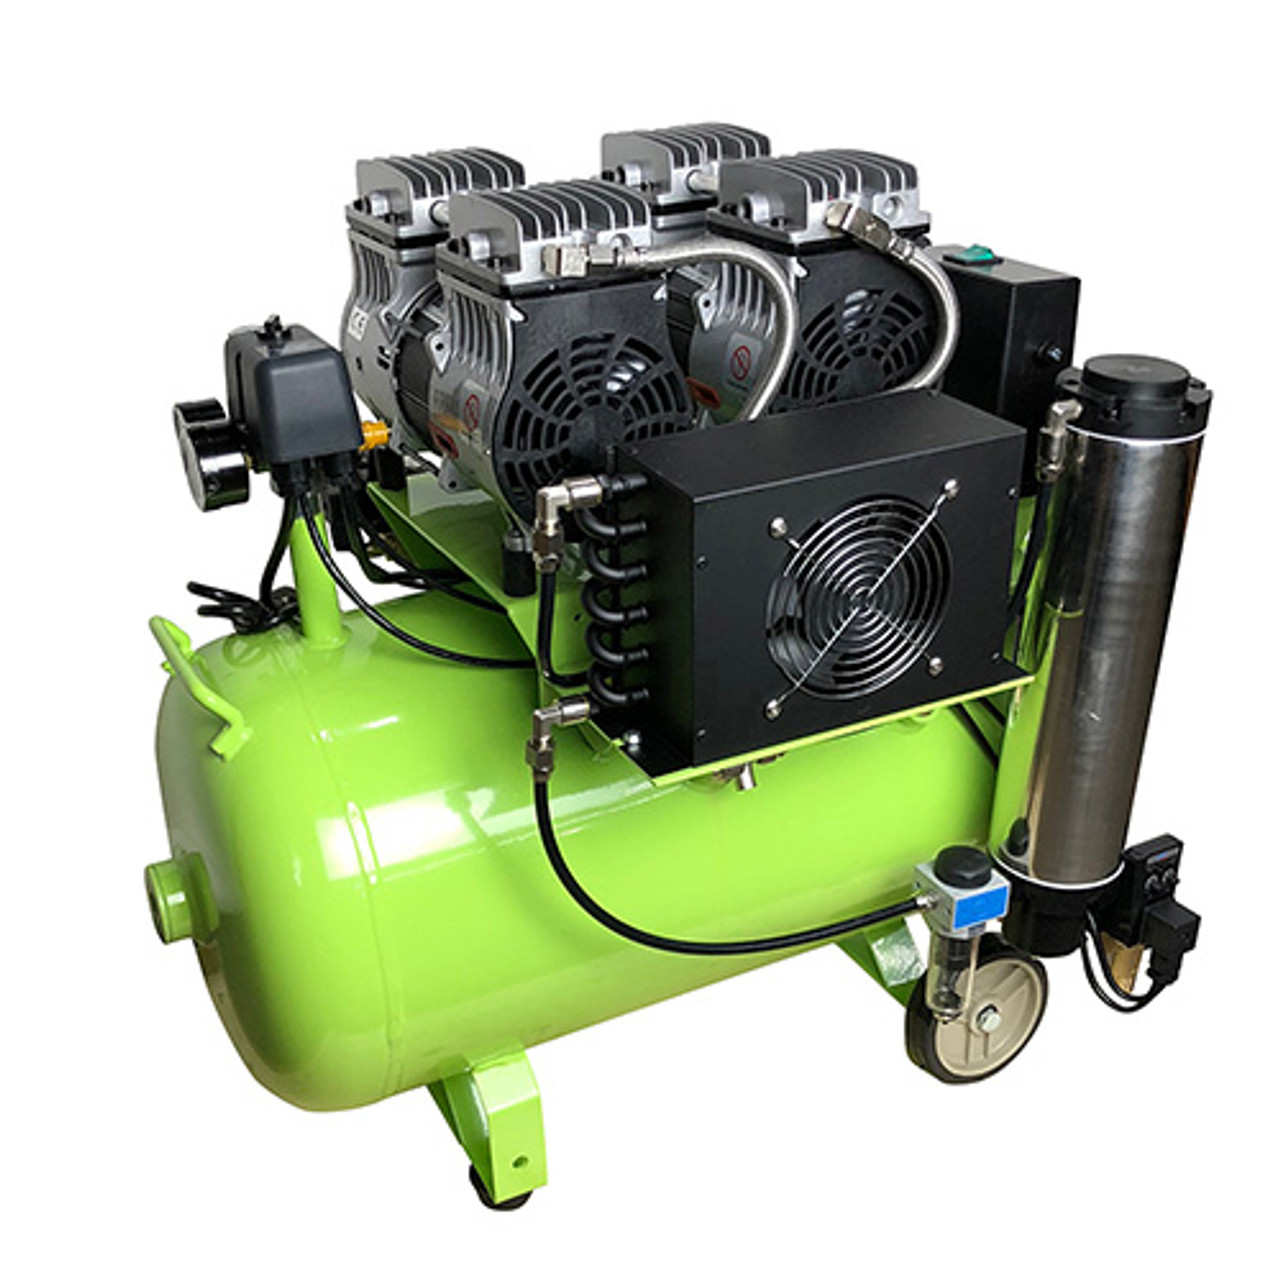 ARBE 15 Gallon Oil-Free Air Compressor